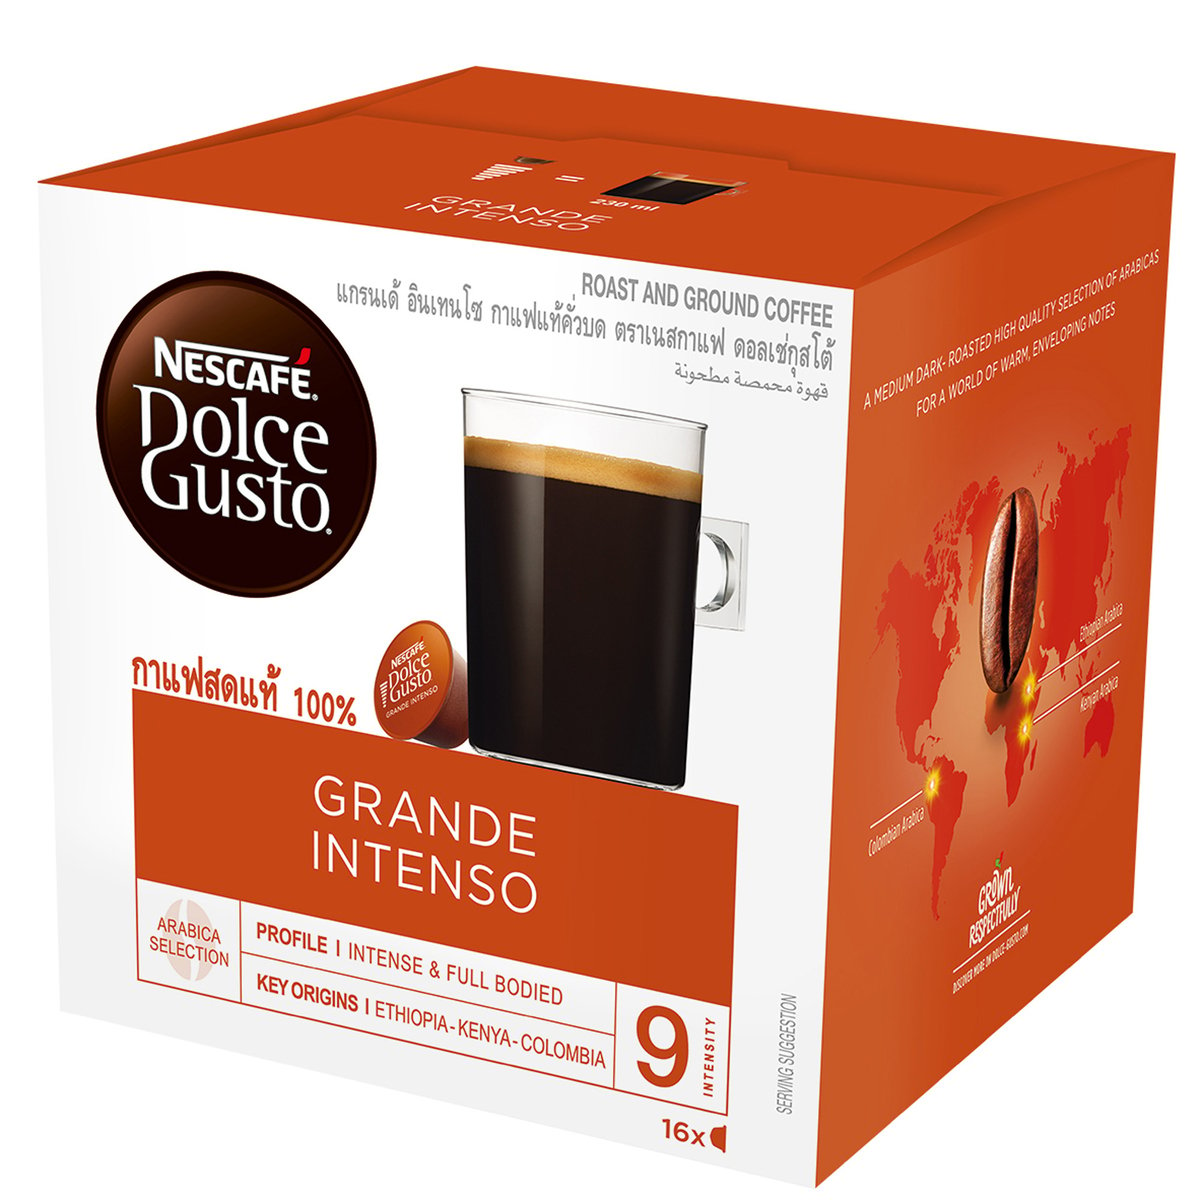 Nescafe Dolce Gusto Grande Intenso Coffee Capsules 16pcs